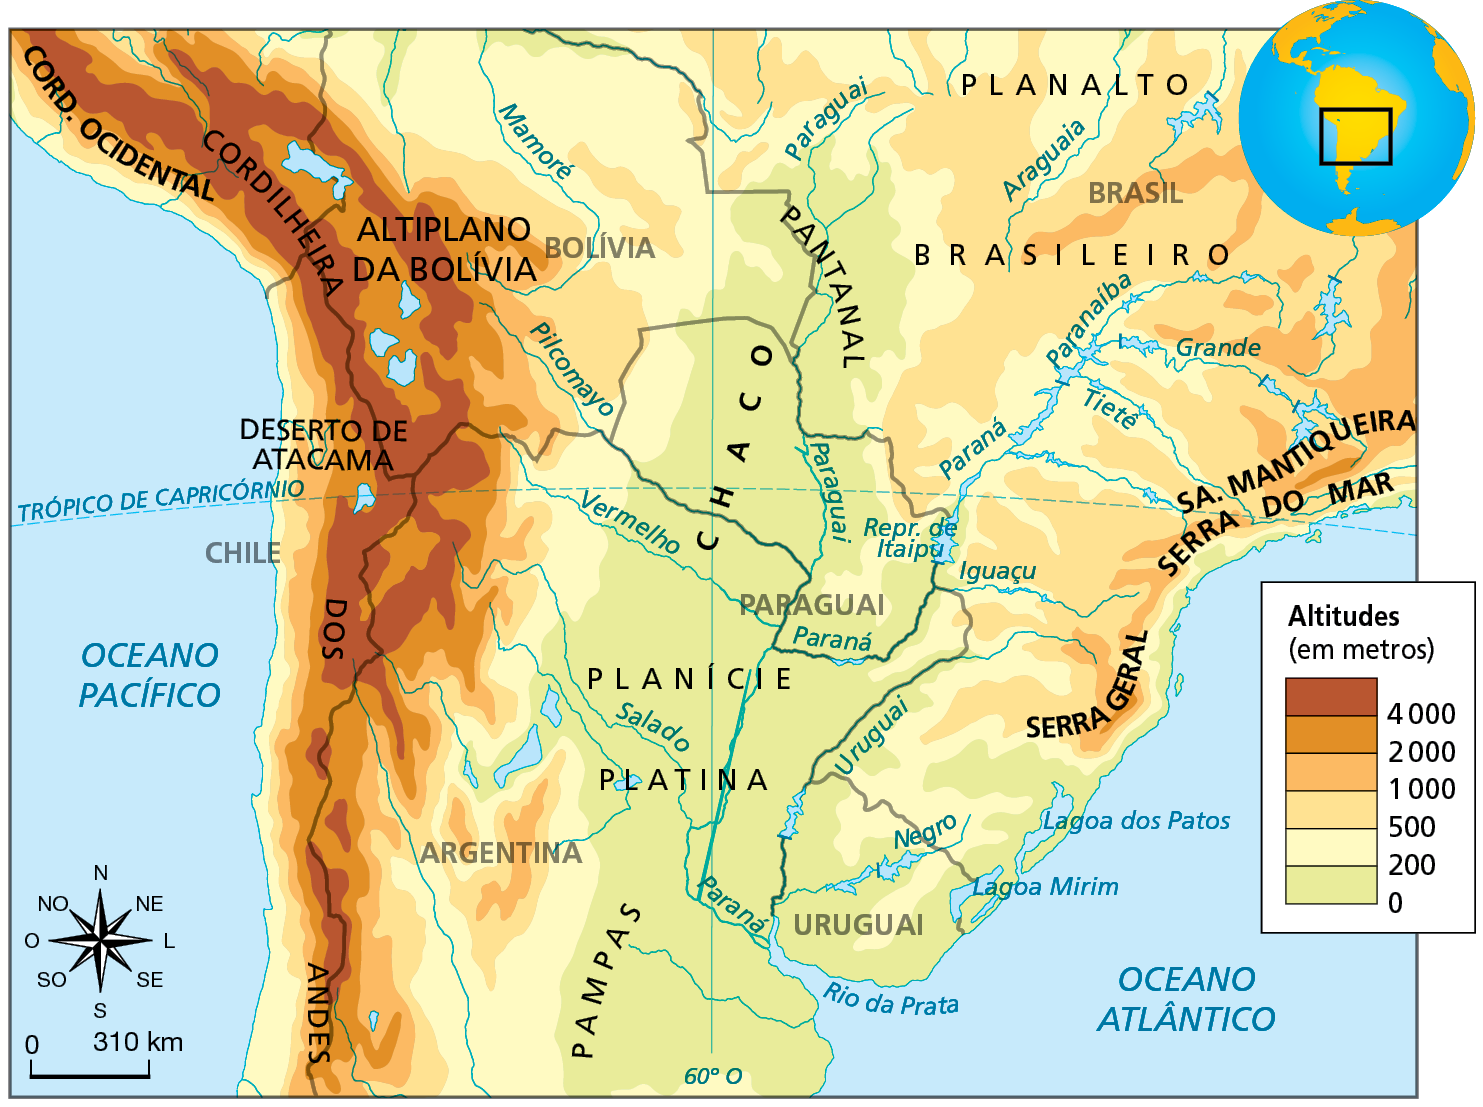 Mapa. Chaco Mapa da região centro-sul da América do Sul, representando as altitudes da costa oceânica Atlântica (leste) até a costa oceânica do Pacífico (oeste). As áreas mais elevadas da América do Sul estão próximas ao litoral oeste, na Cordilheira dos Andes, com altitudes acima de 4.000 metros, que percorre desde a fronteira da Argentina com o Chile em toda sua extensão, o Altiplano boliviano e a Cordilheira Ocidental, no sul do Peru. As áreas menos elevadas encontram-se no centro do continente, na regão dos Pampas, Planície Platina e região do Chaco e Pantanal, com elevações entre zero e 200 metros de altitude, bem como o litoral atlântico. Áreas com elevação entre mil e dois mil metros localizadas na Serra Geral, no sul do Brasil, Serra do Mar e Serra da Mantiqueira, no sudeste do Brasil; áreas de elevação média, entre 500 metros e mil metros de altitude encontram-se no Planalto Brasileiro, oeste da região sul e sudeste; áreas com elevações entre 200 e 500 metros estão próximas ao sudeste e centro-oeste brasileiros, norte e leste da Bolívia e oeste do Paraguai e Argentina, nas bordas da Cordilheira dos Andes. À esquerda, rosa dos ventos e escala de 0 a 310 quilômetros.